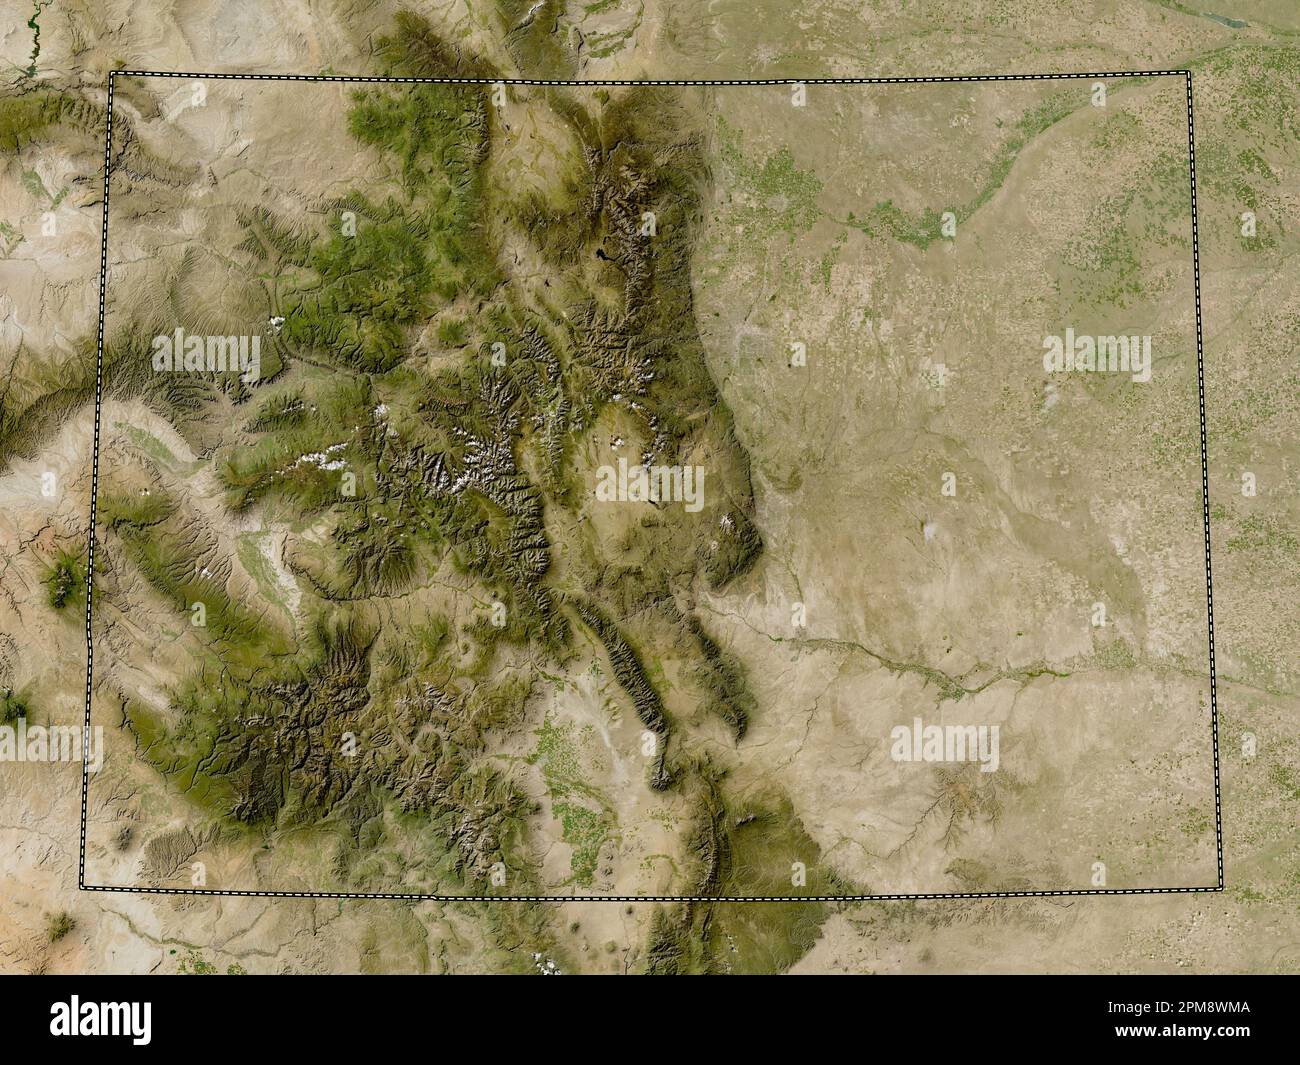 Colorado, stato degli Stati Uniti d'America. Mappa satellitare a bassa risoluzione Foto Stock